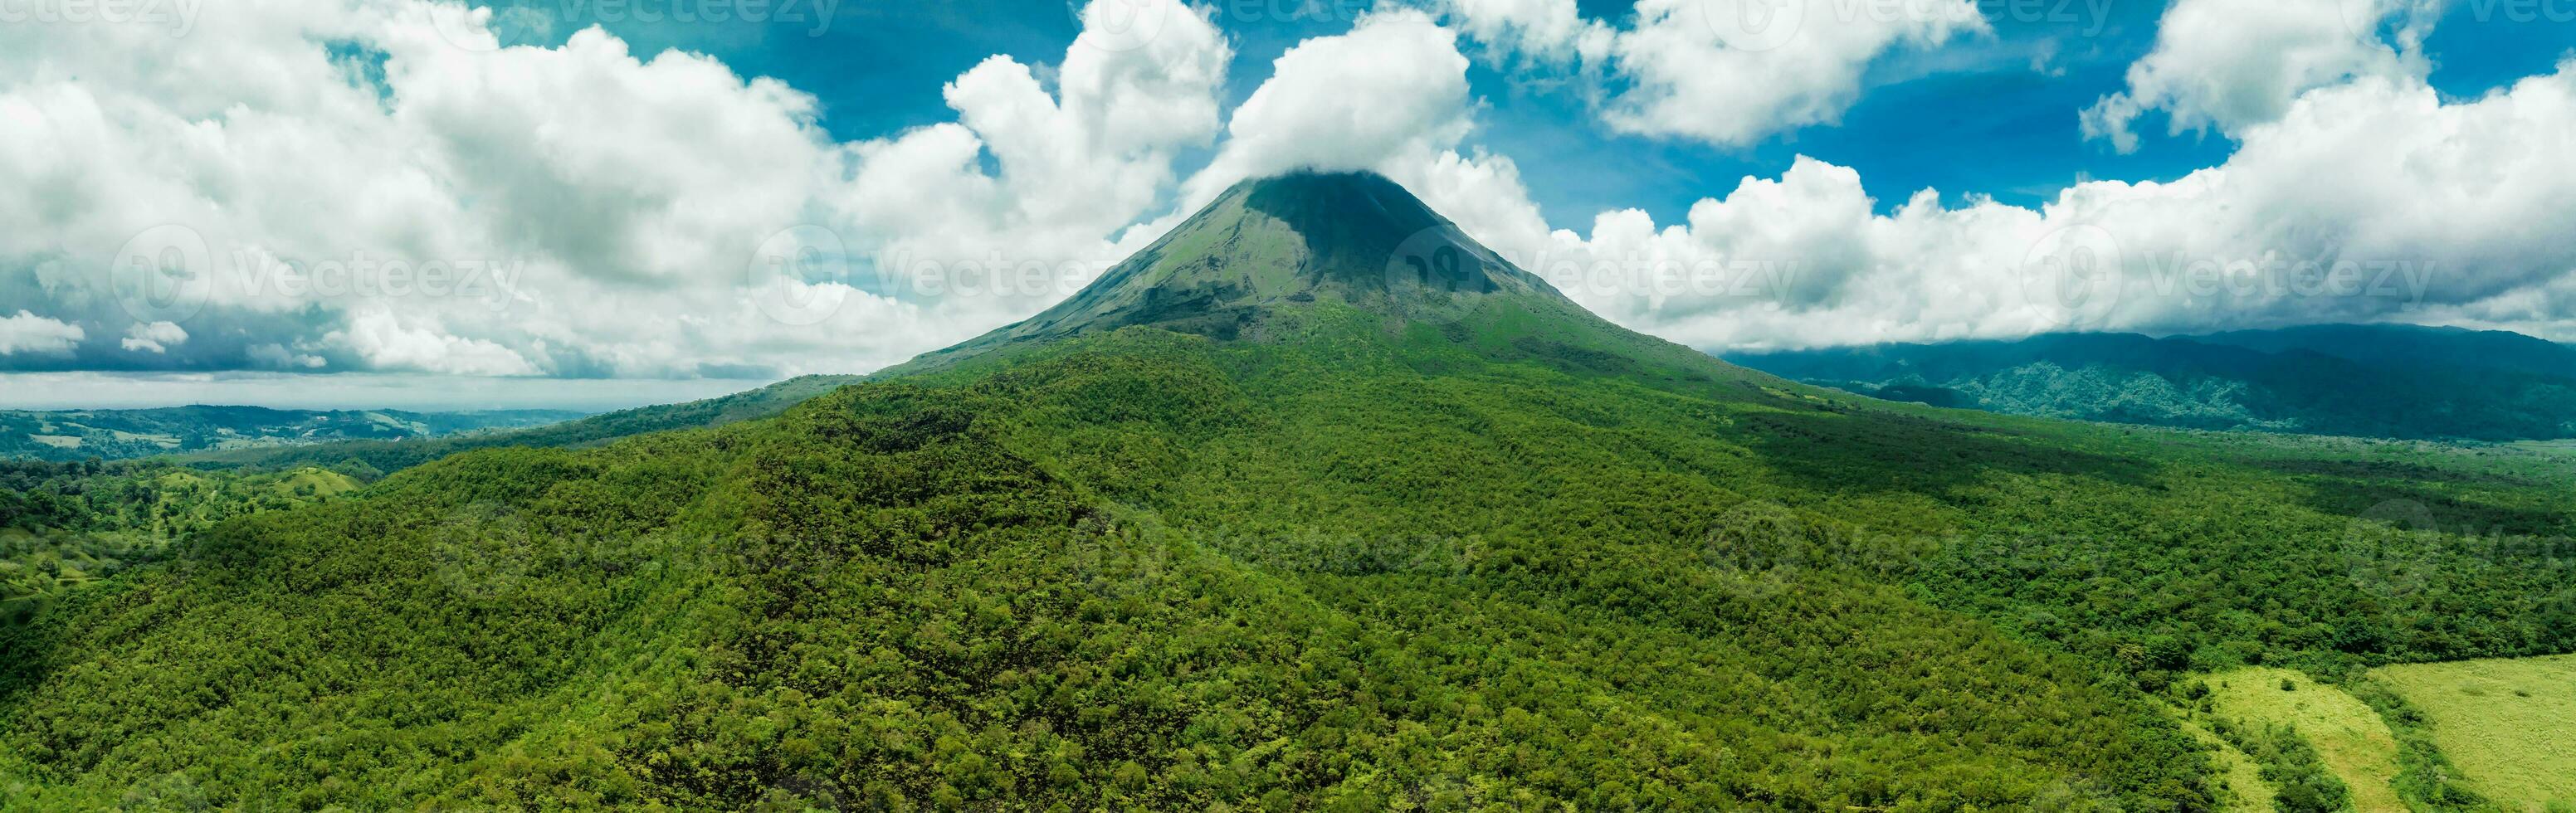 incroyable vue de magnifique arénal volcan dans costa rica photo